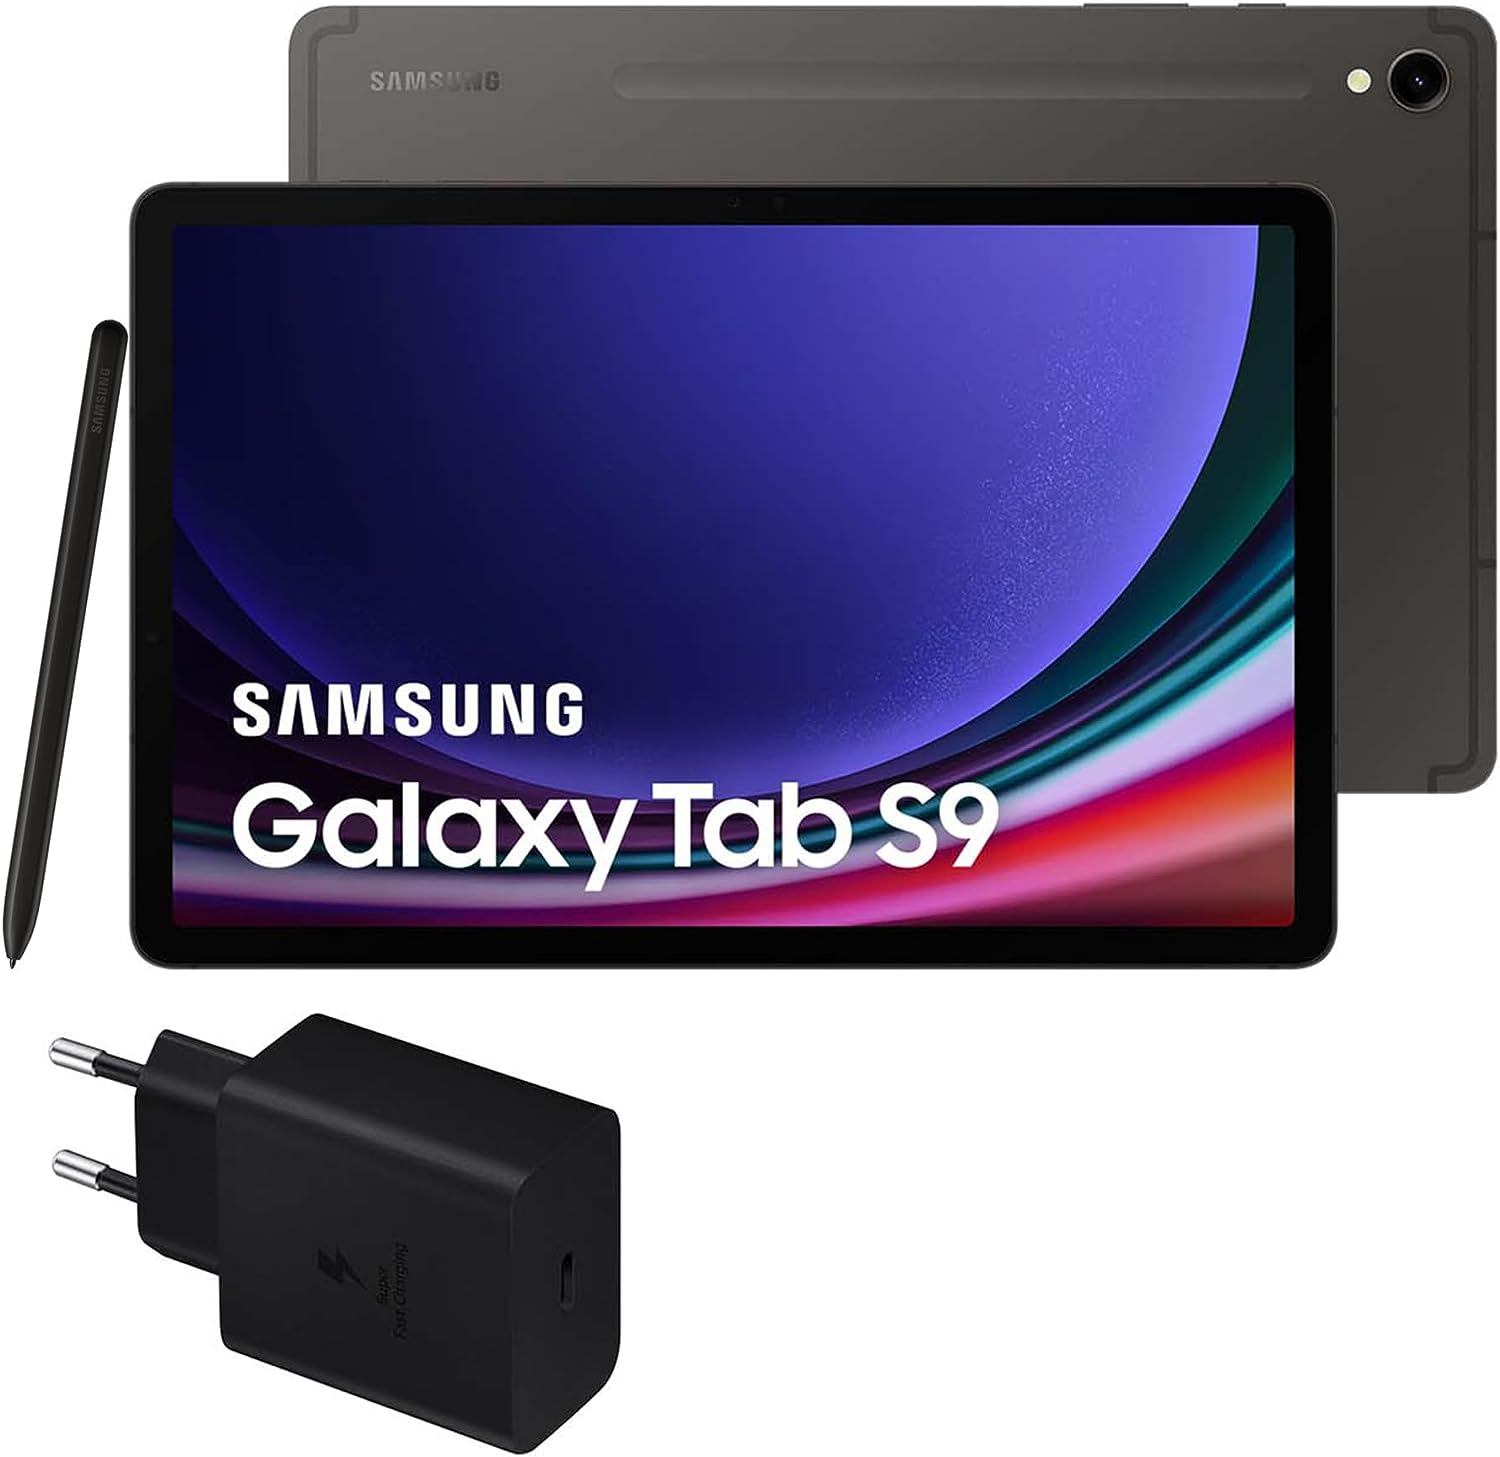 Samsung Galaxy Tab S9 vs Samsung Galaxy Tab S8